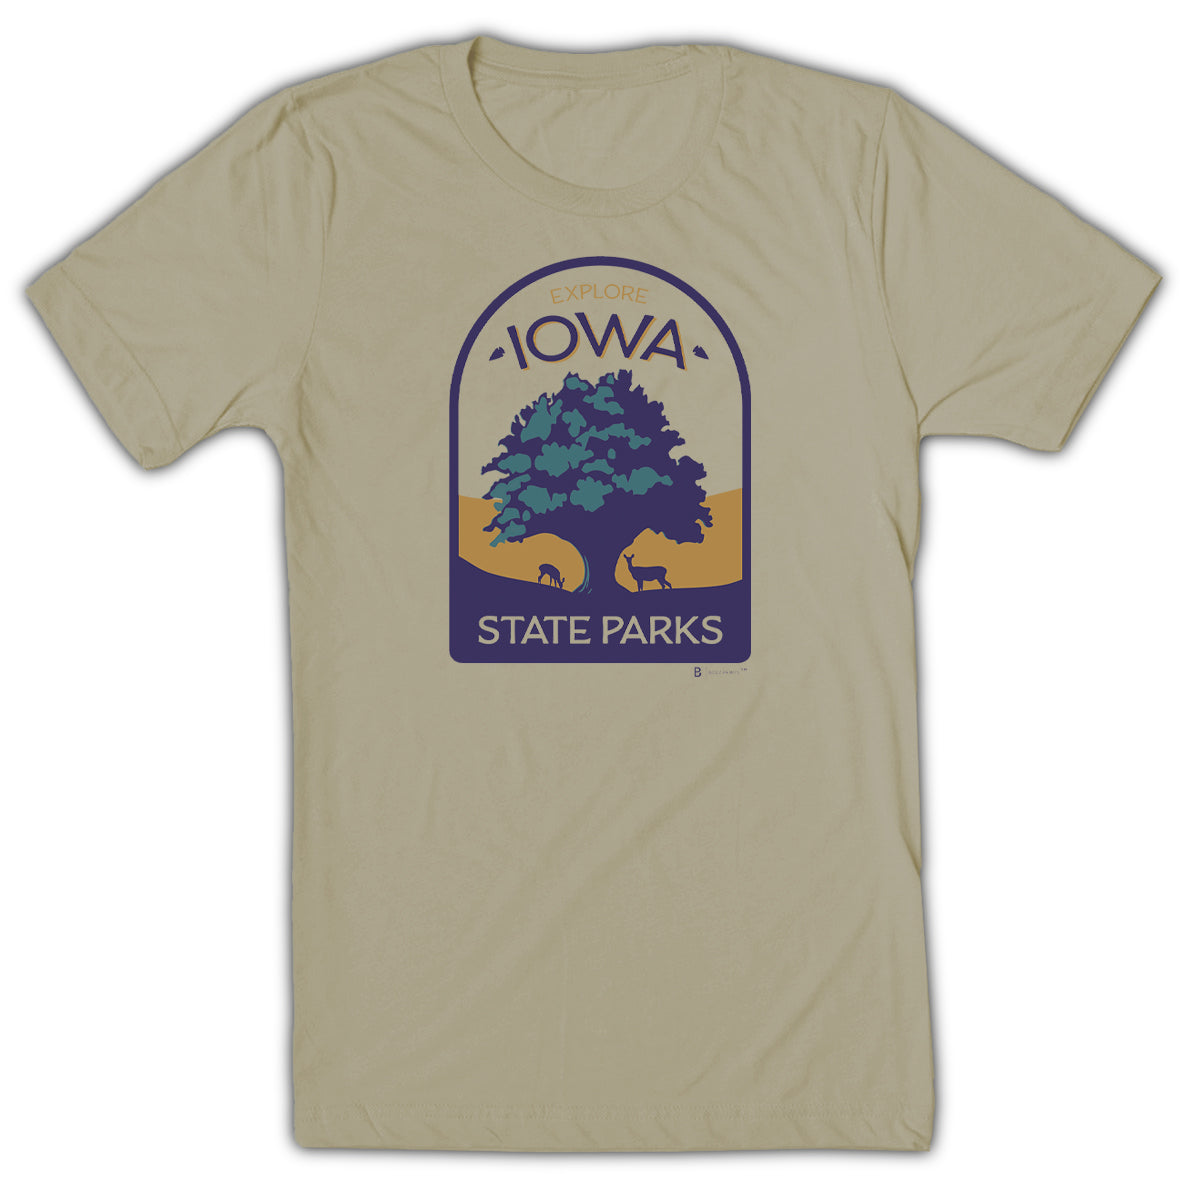 Explore Iowa State Parks Crest T-Shirt - Bozz Prints